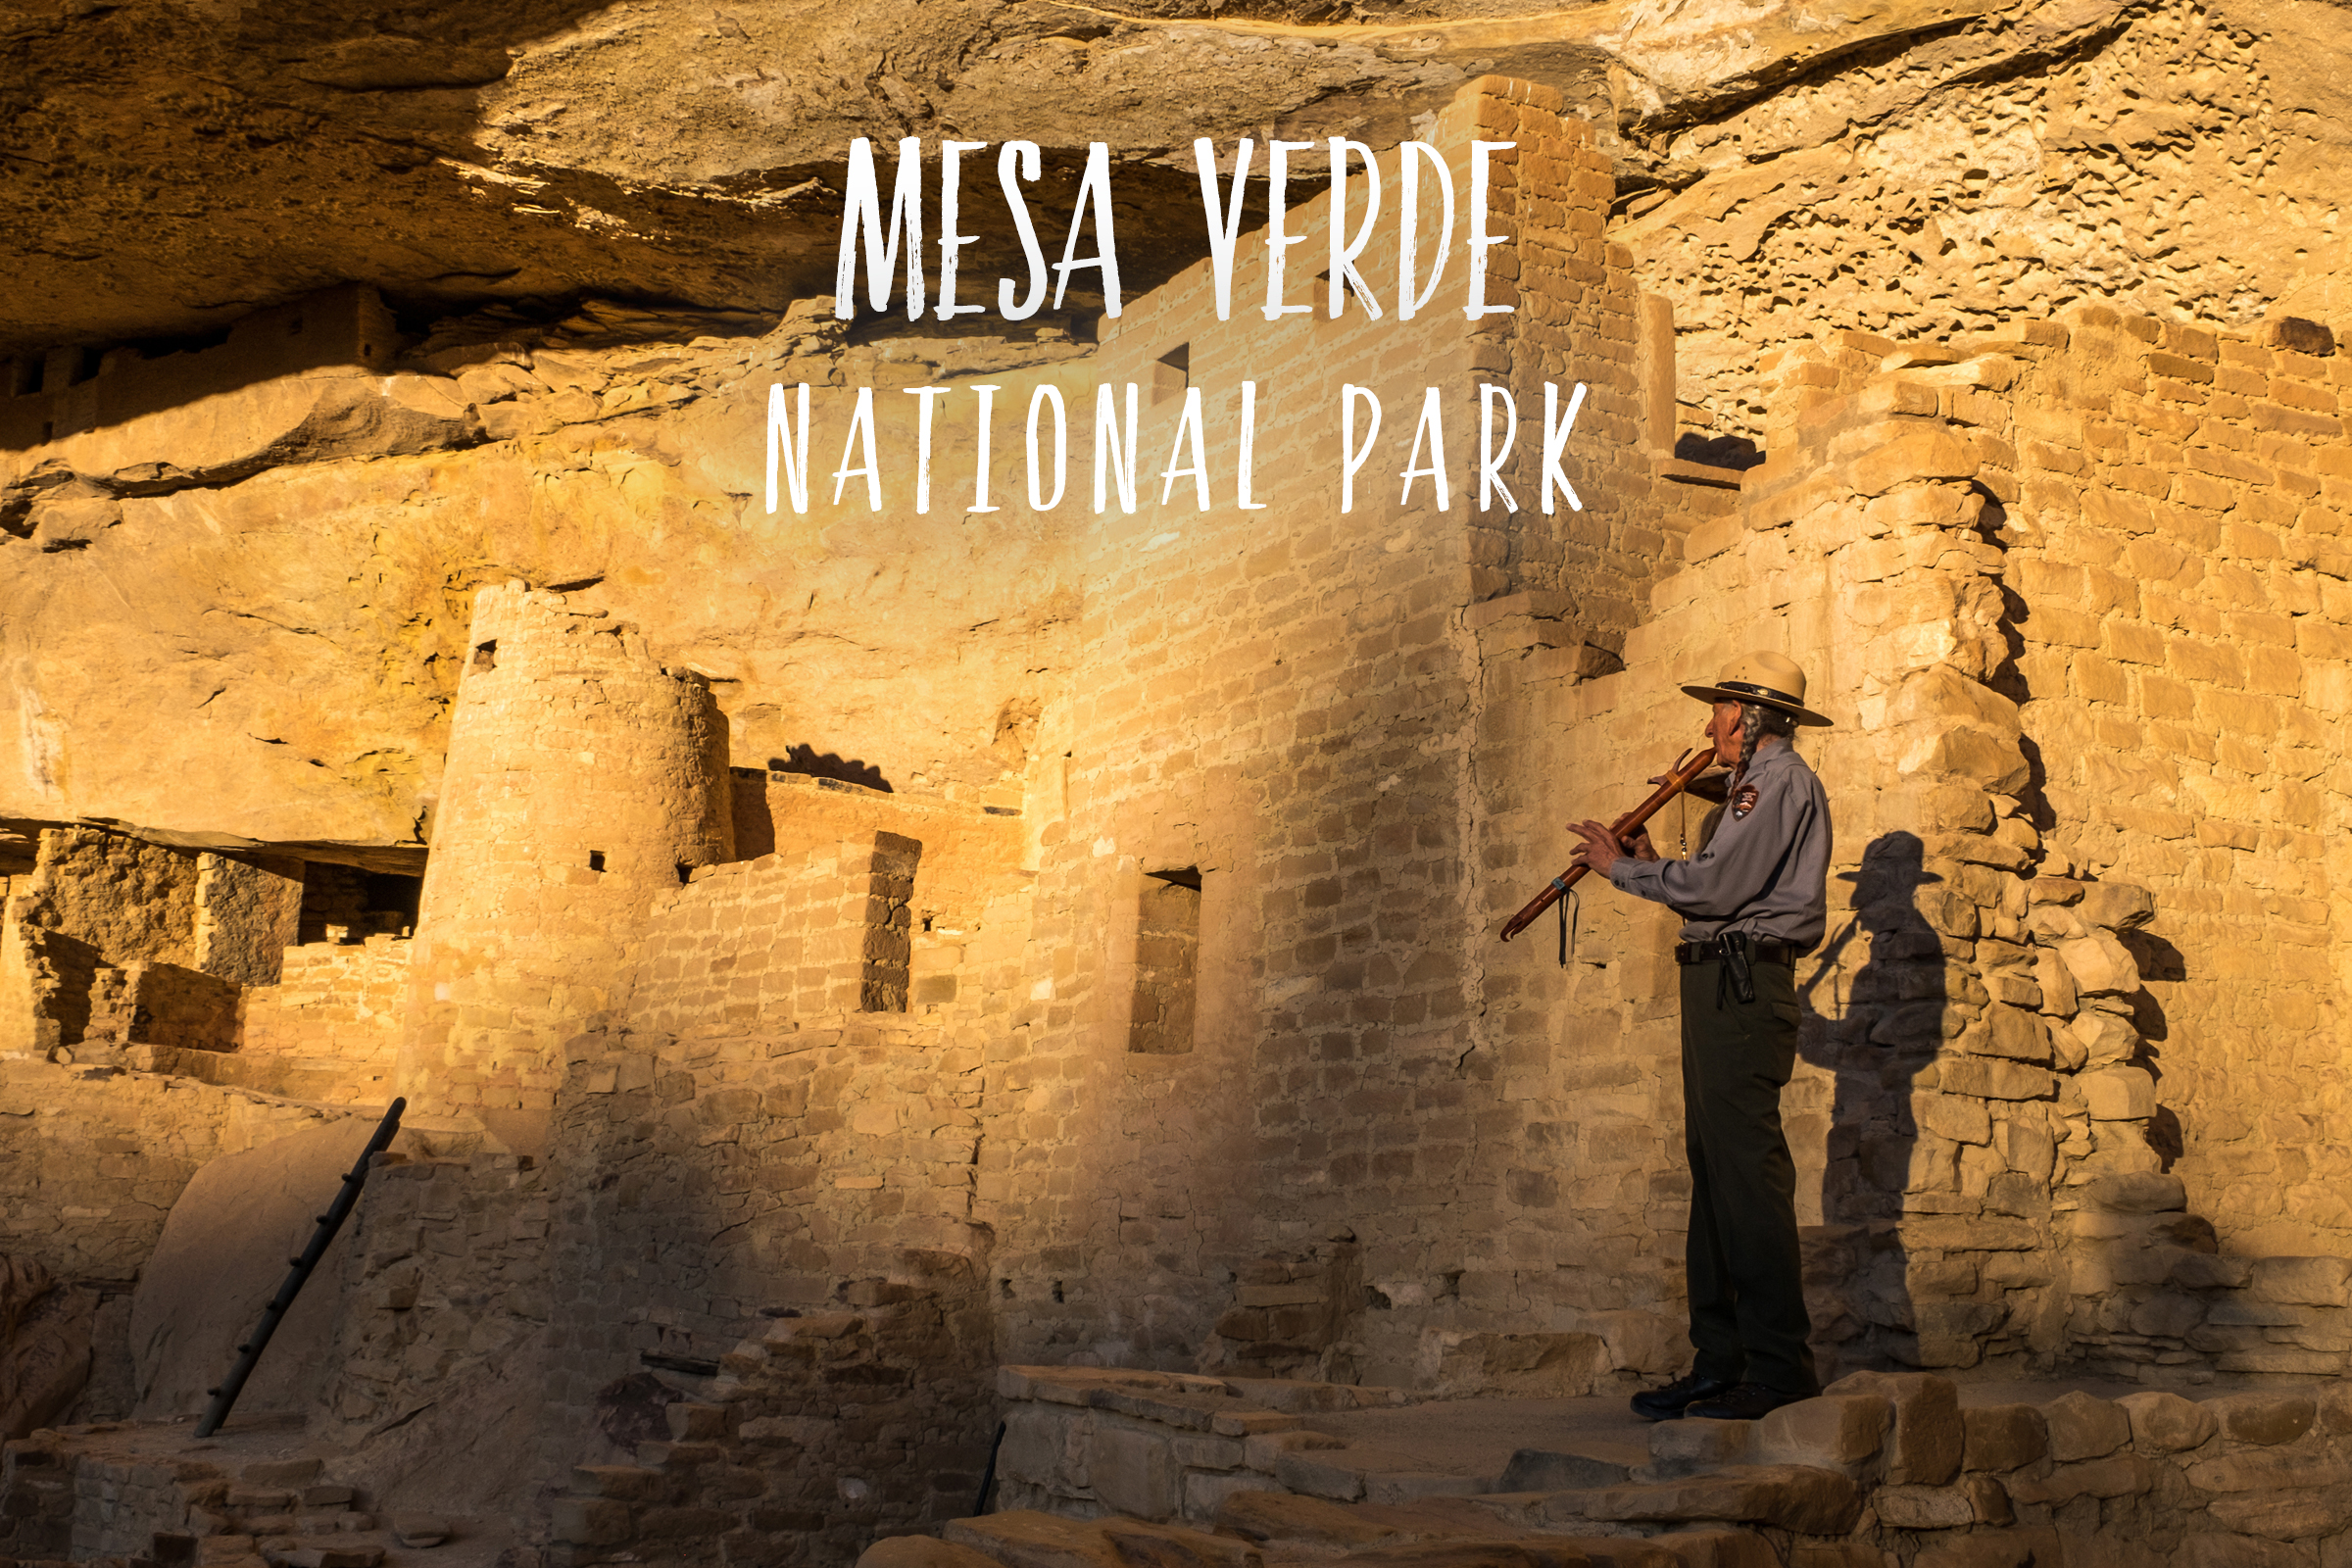 Park 48/59: Mesa Verde National Park in Colorado